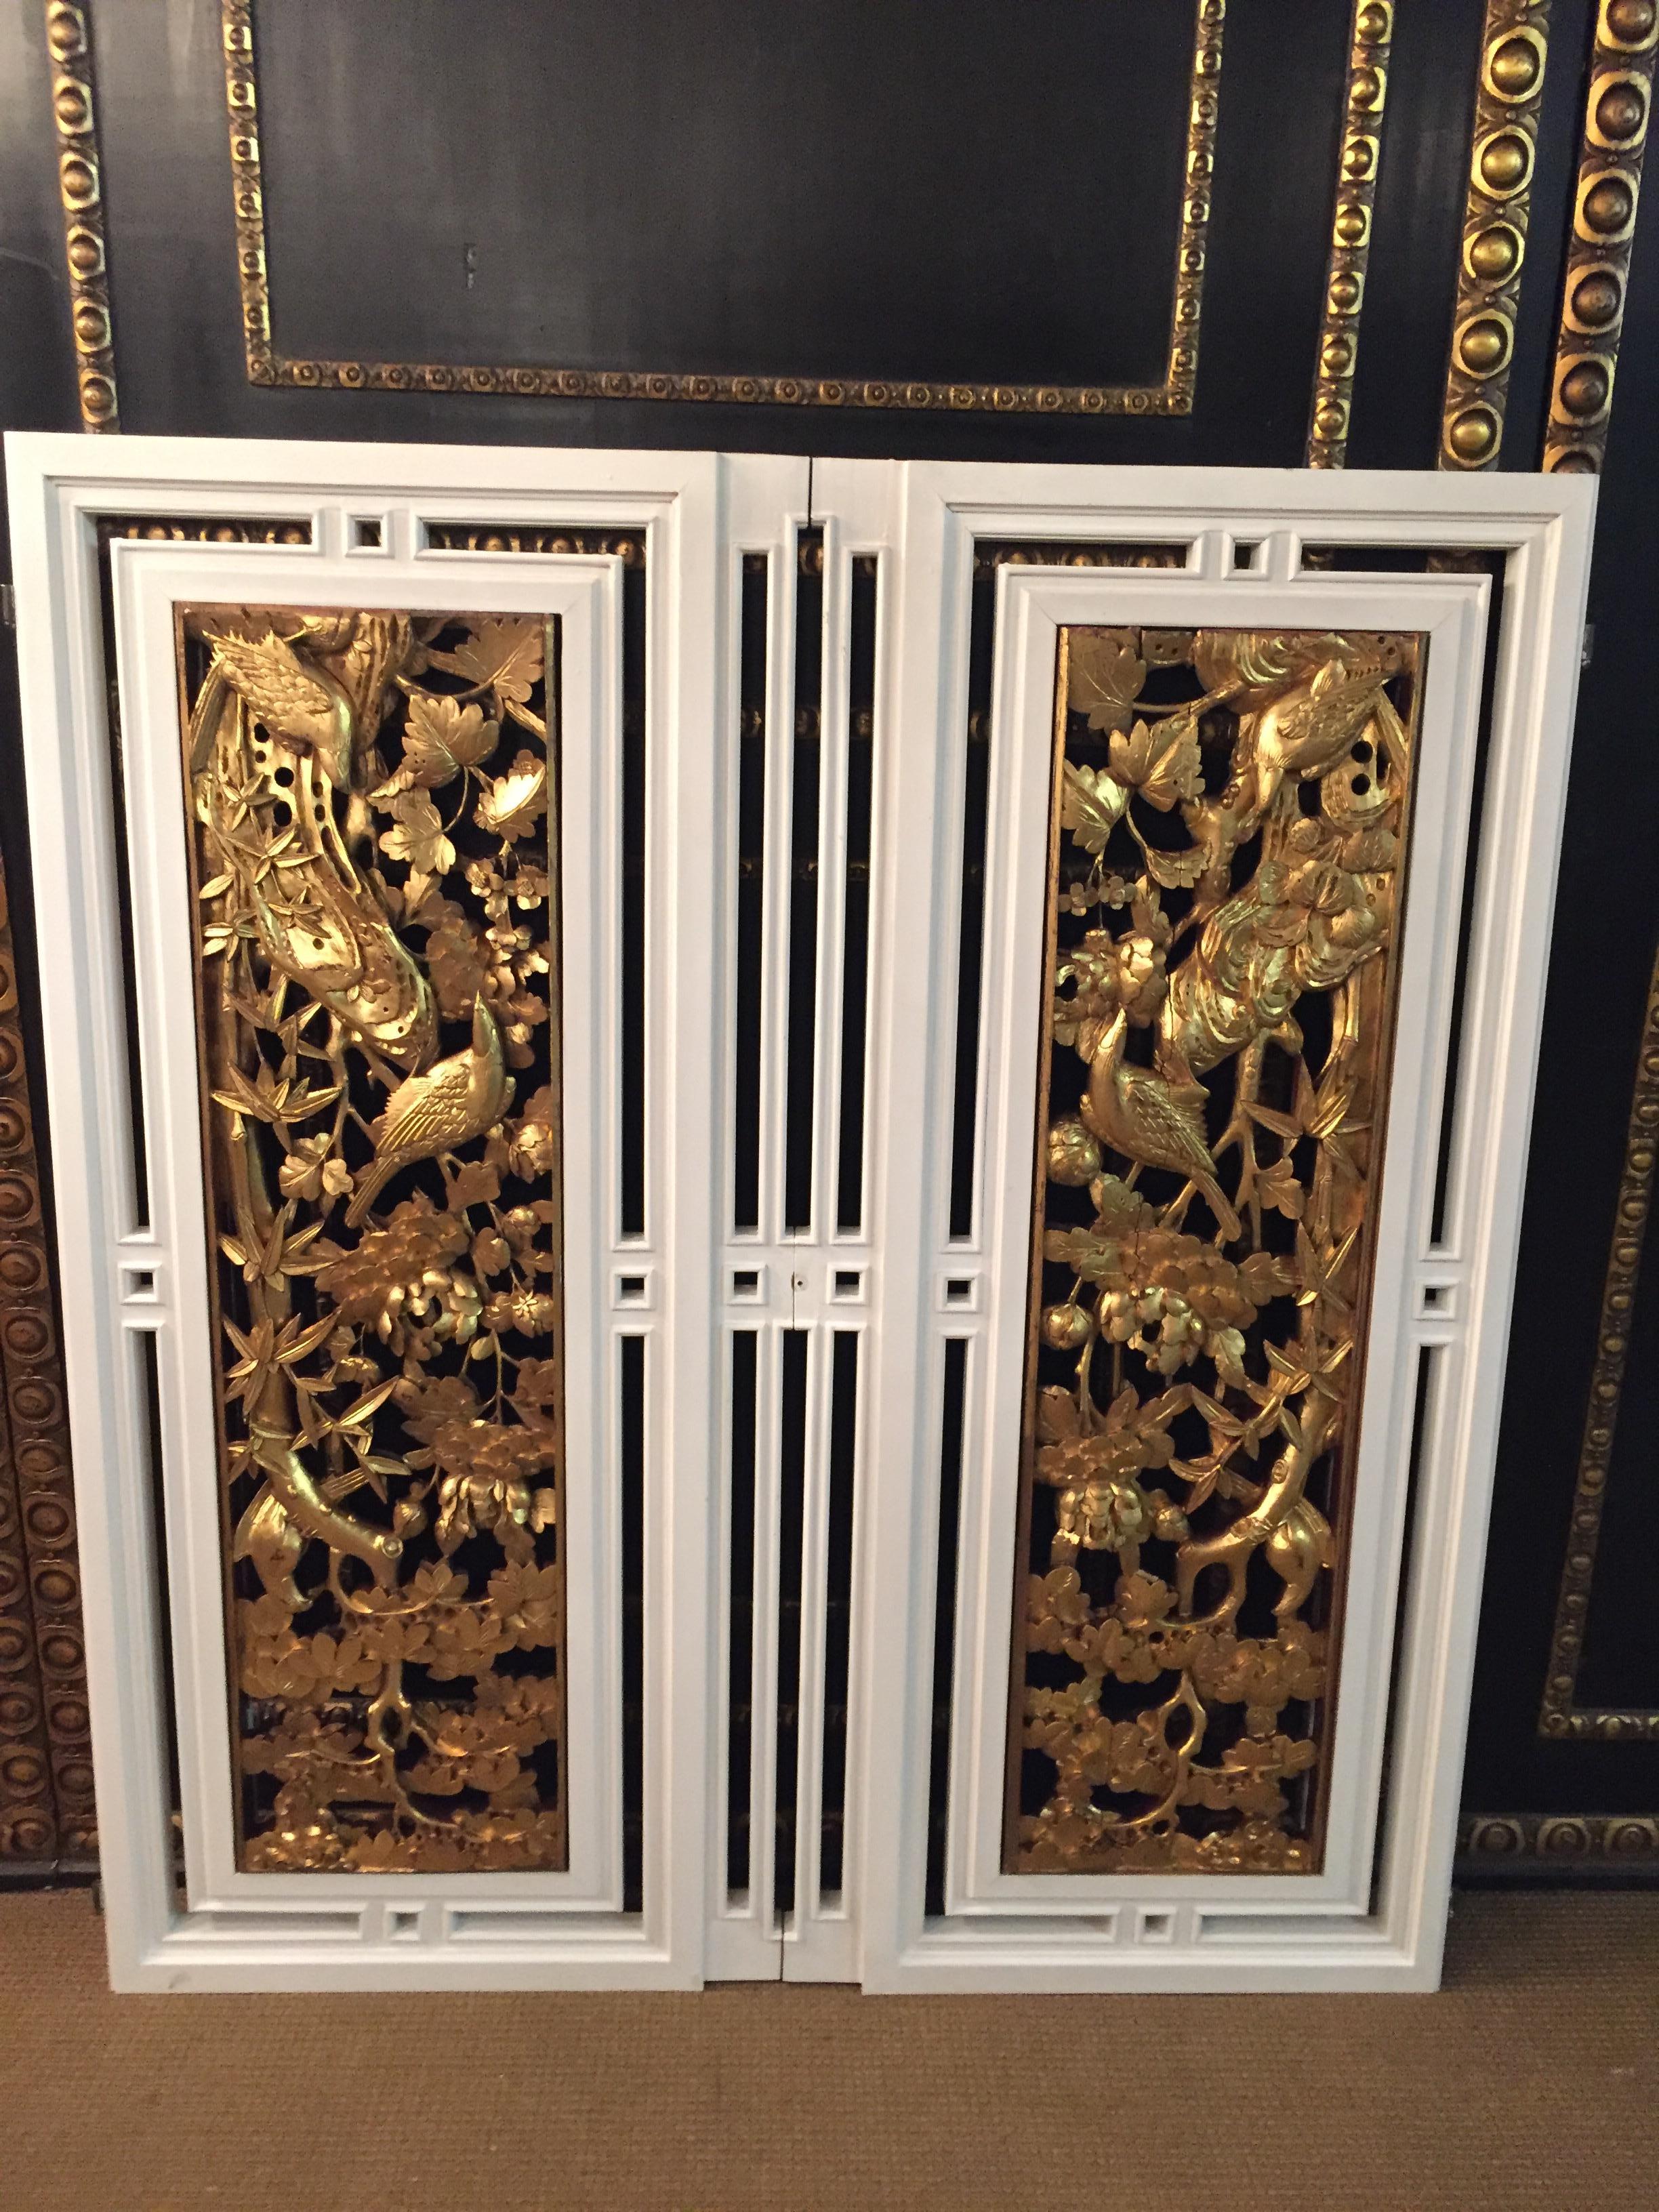 2 schöne Fenstertüren mit geschnitzten Vögeln aus vergoldetem Massivholz.
Sie können sie auch als Tafeln verwenden.